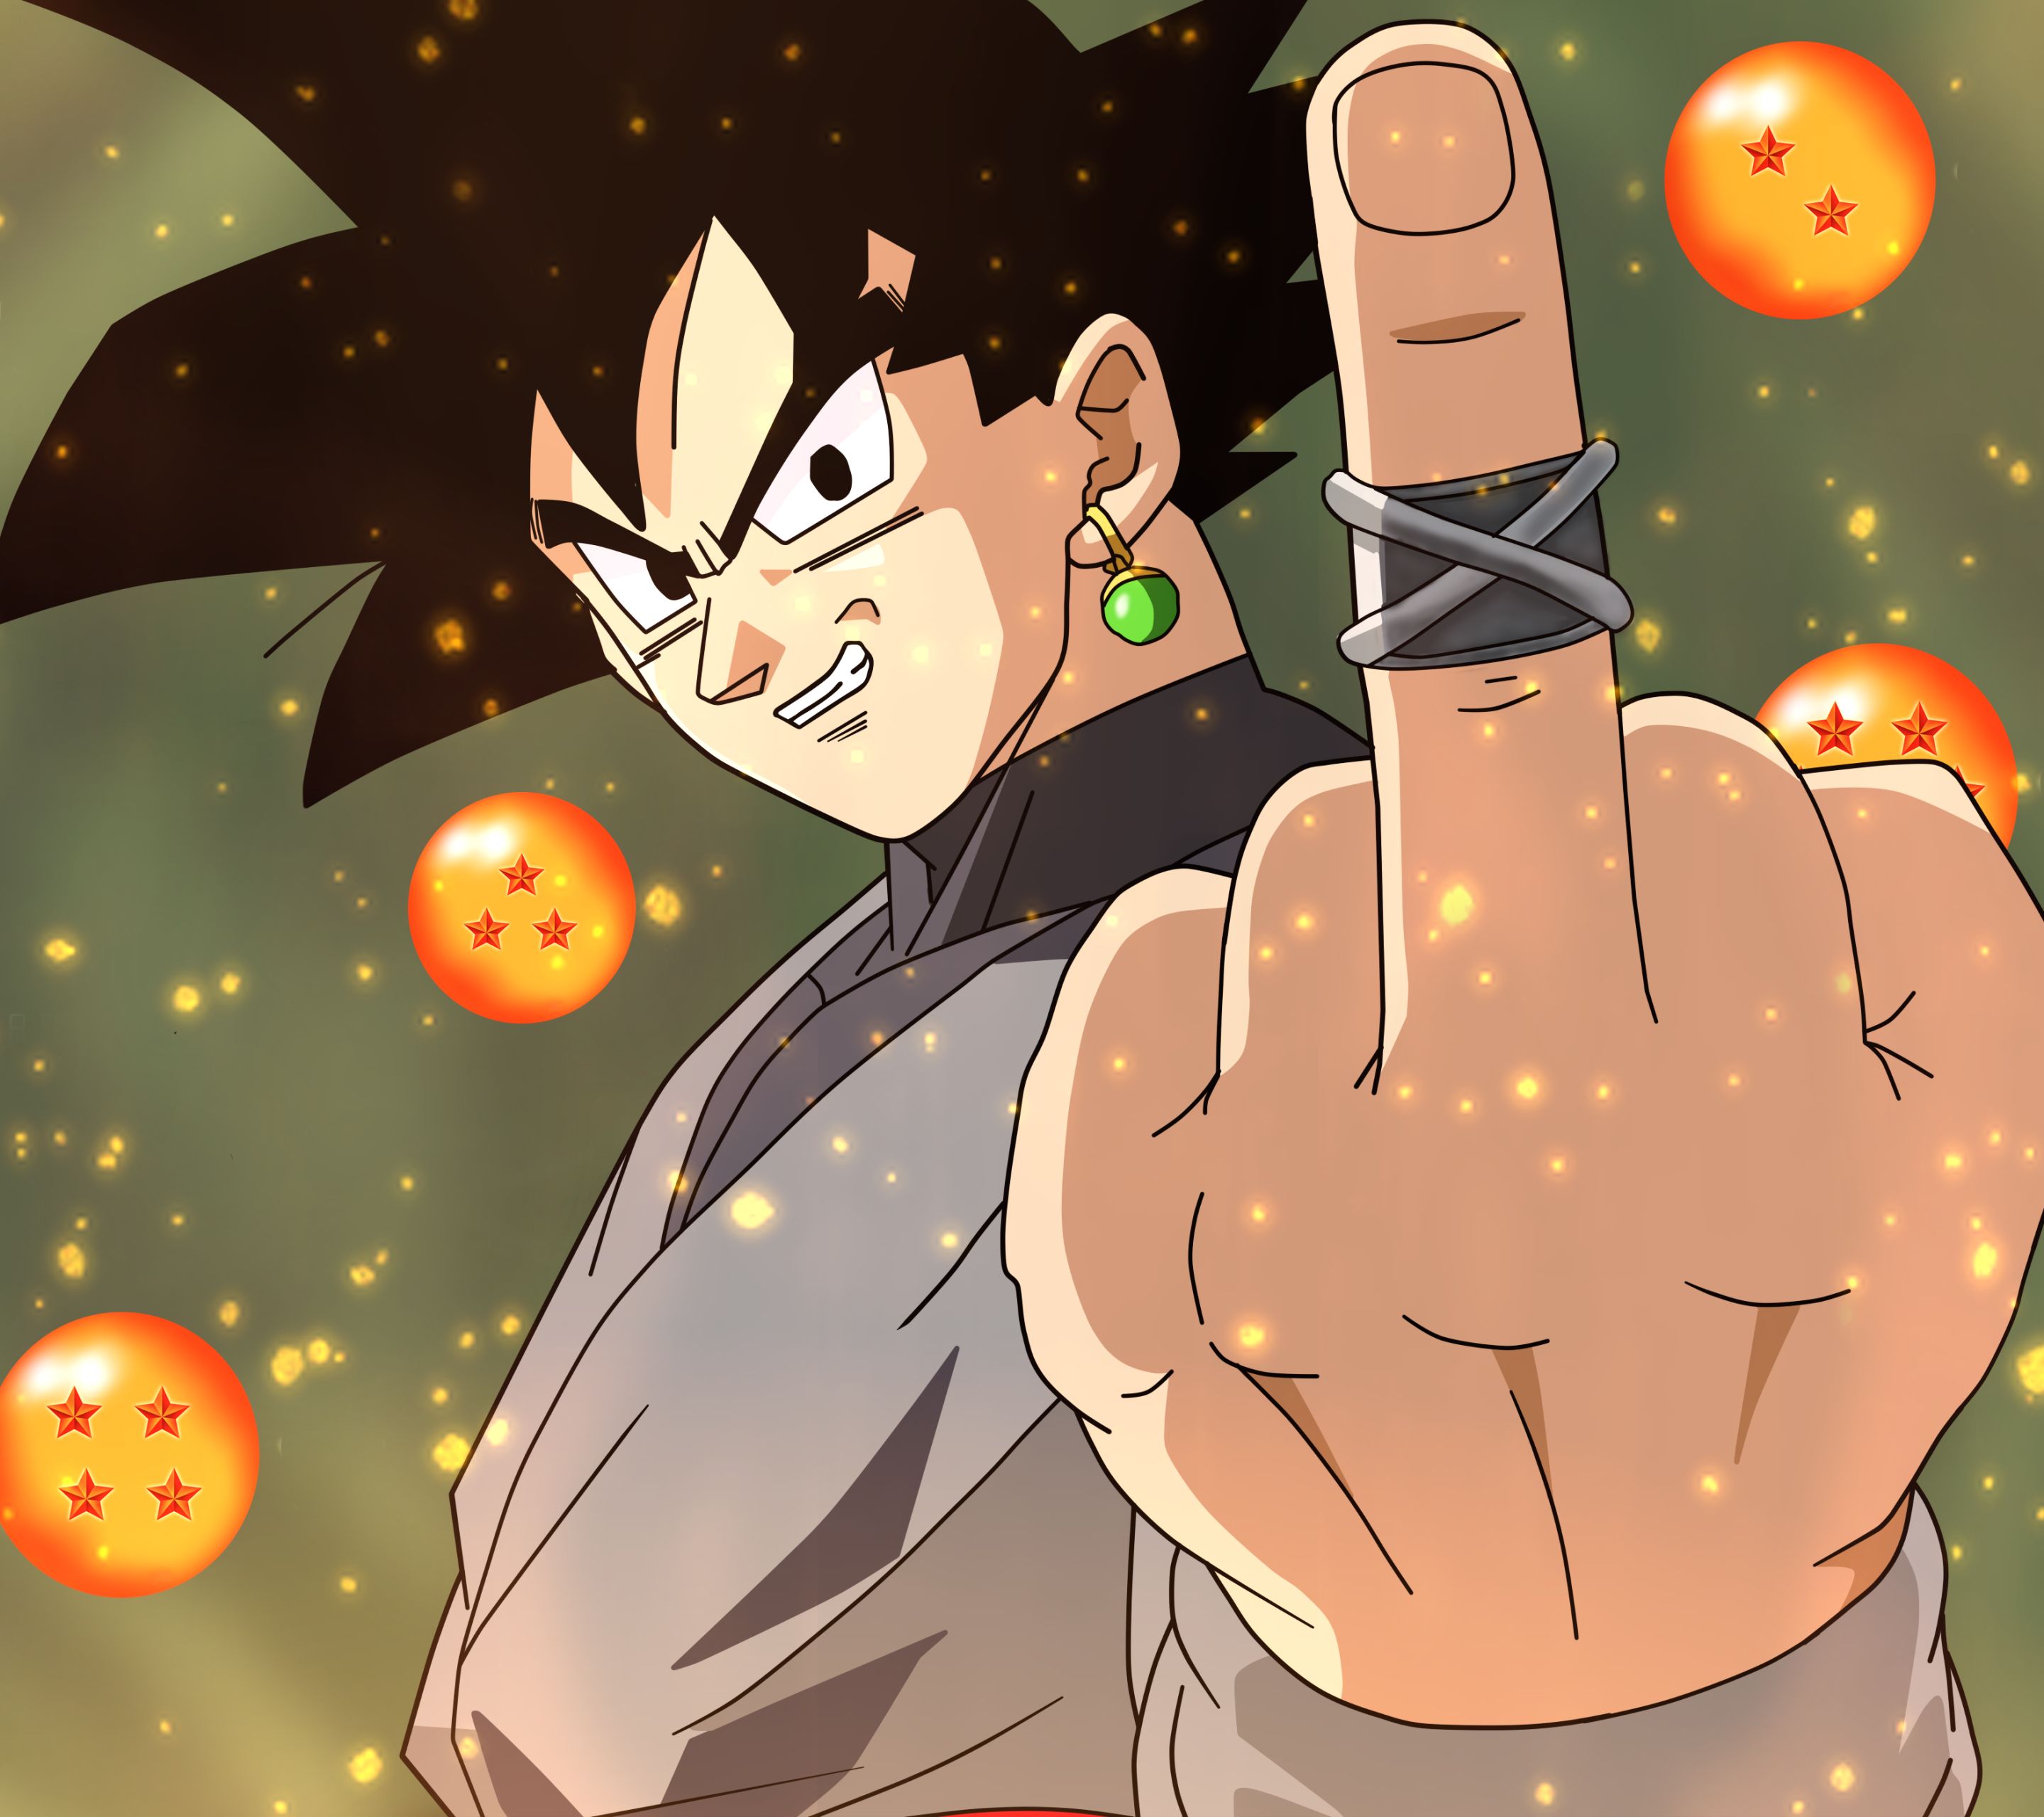 Goku Black  Anime dragon ball goku, Dragon ball wallpaper iphone, Dragon  ball super artwork